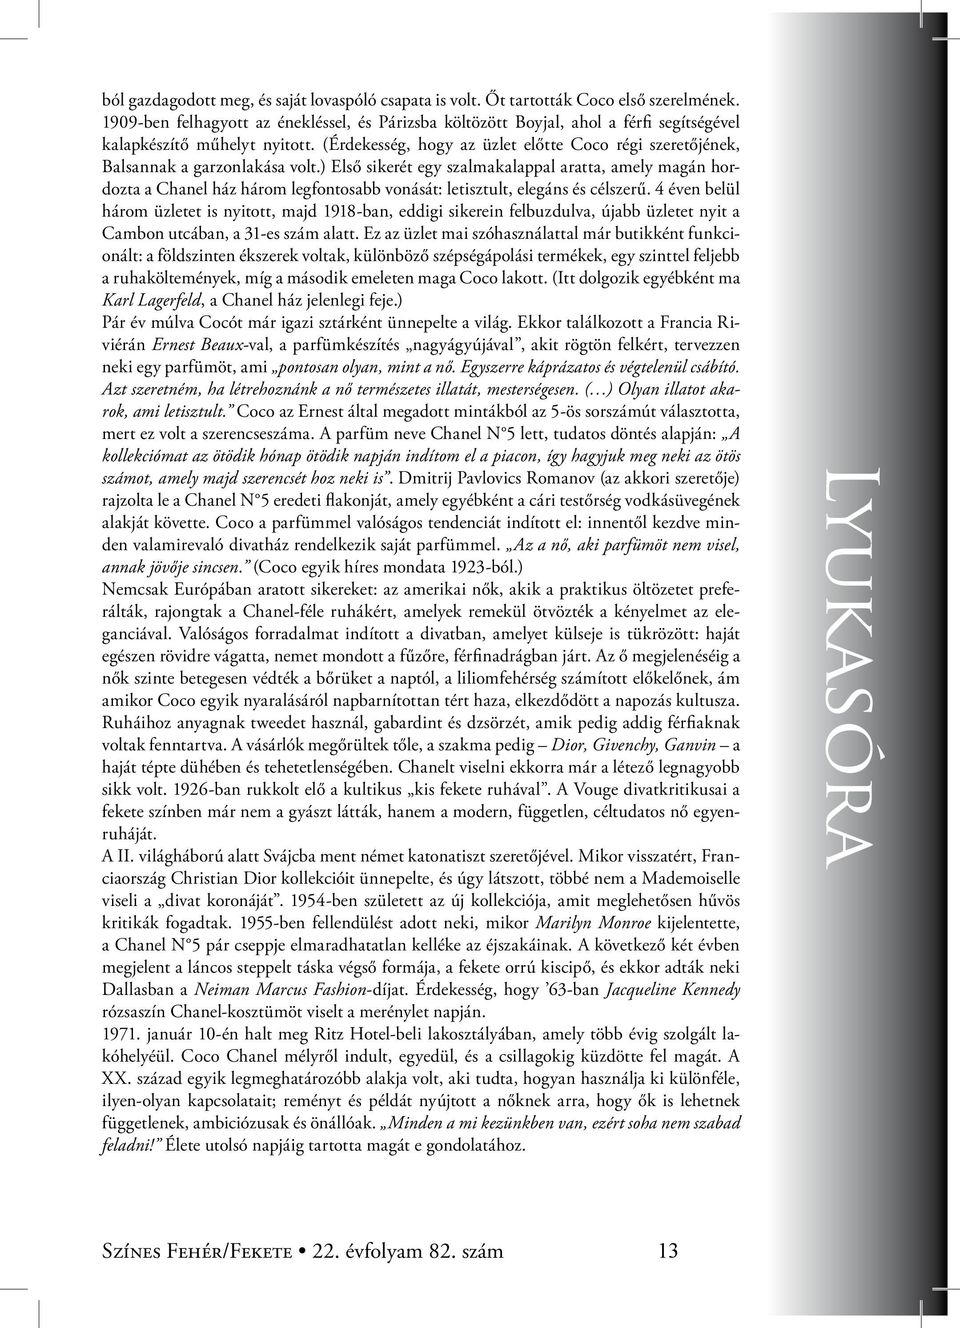 A Ciszterci Rend Nagy Lajos Gimnáziumának diáklapja - PDF Free Download